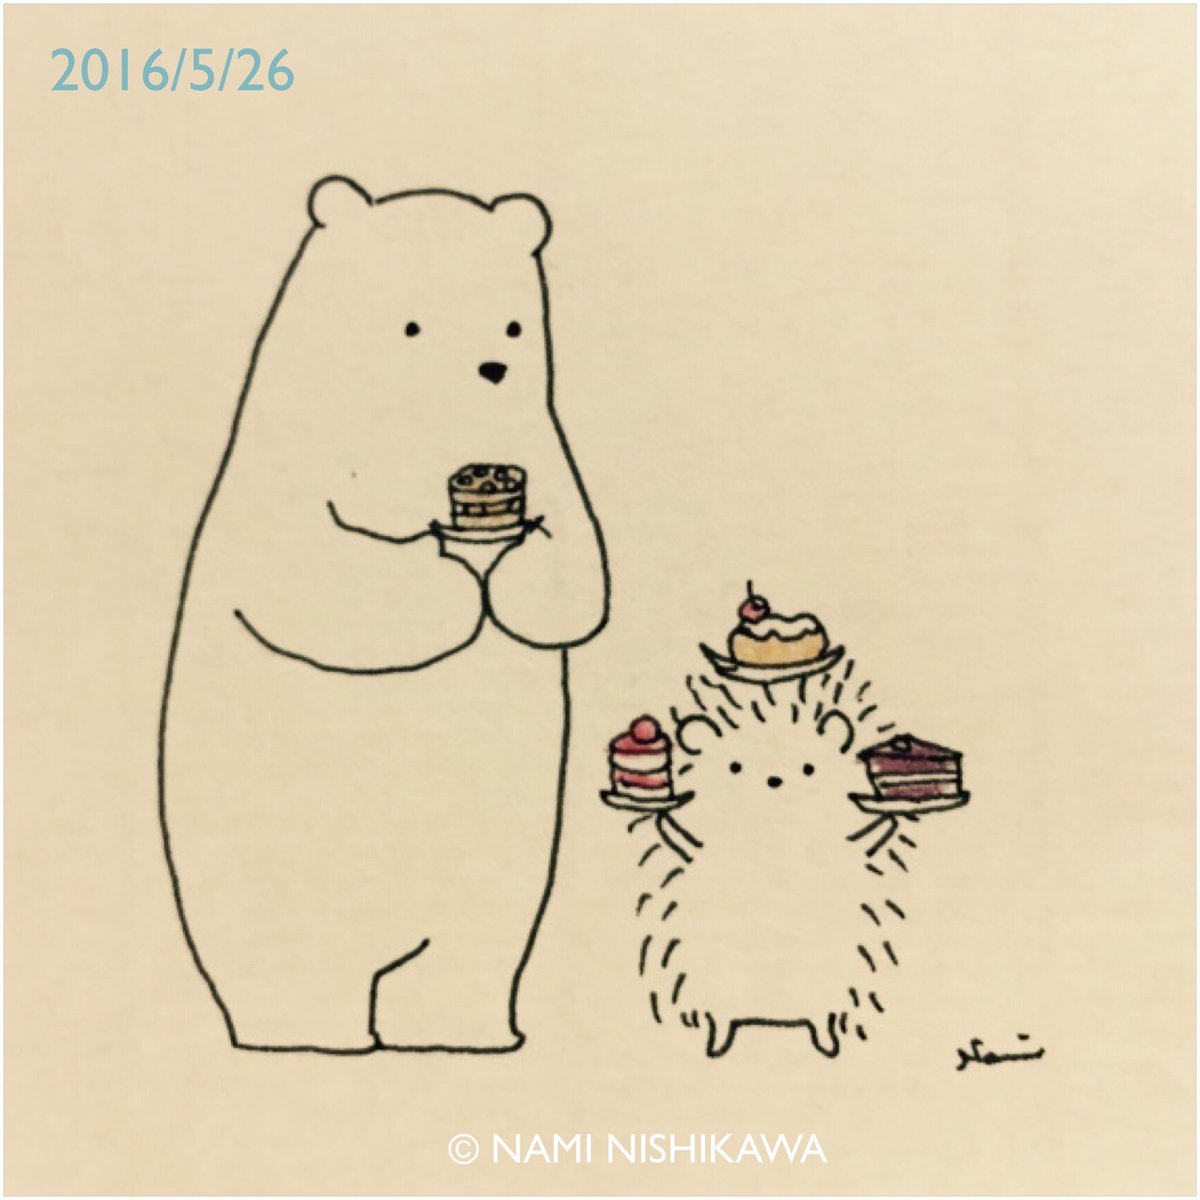 にしかわなみ なみはりねずみ Ar Twitter 864 ケーキ Cakes Illustration Hedgehog Polar Bear イラスト ハリネズミ シロクマ なみはりねずみ